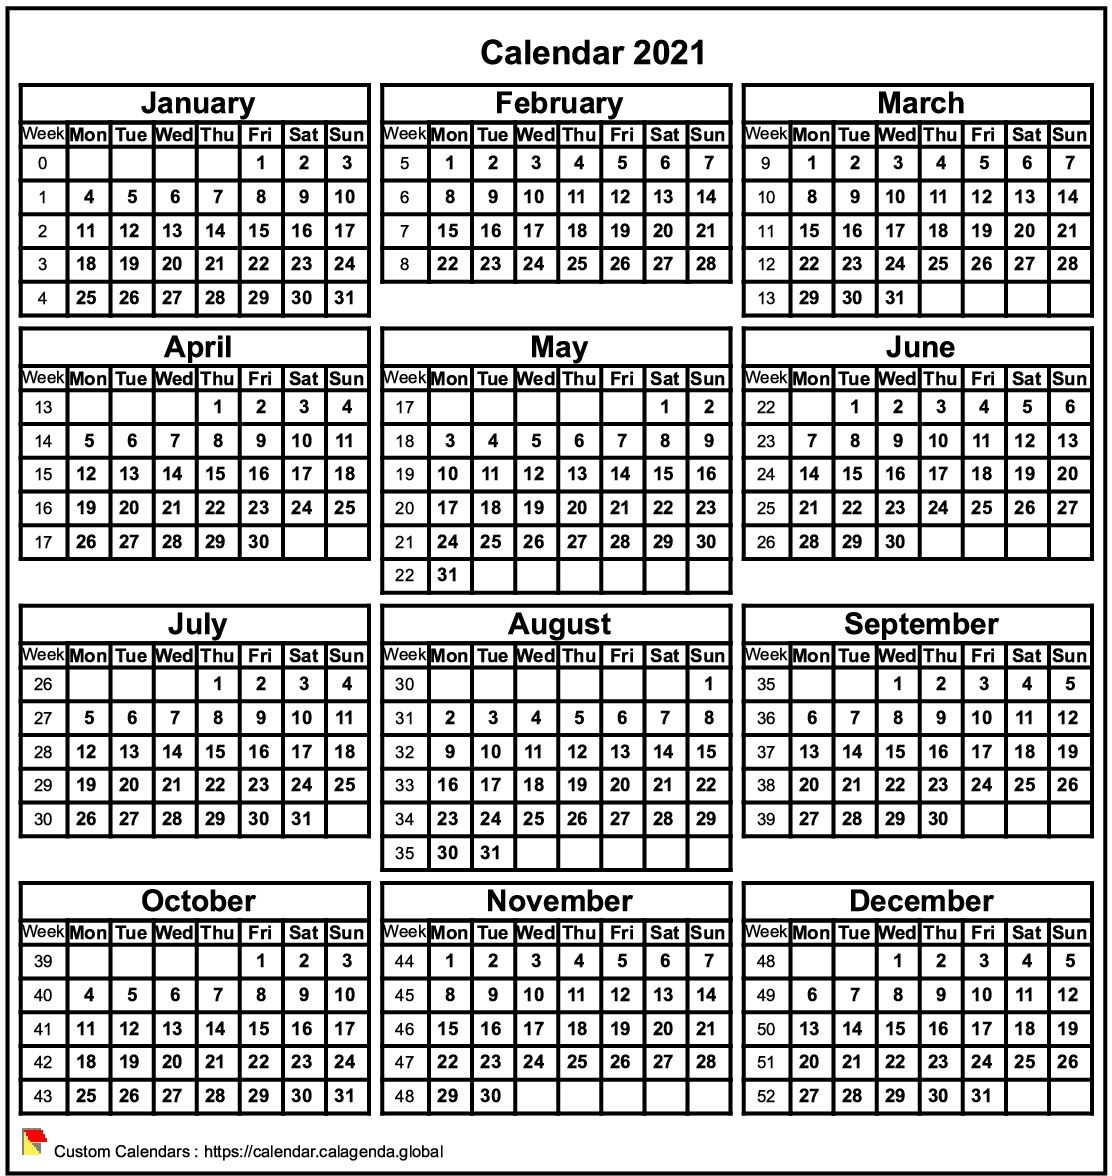 Calendar 2021 format portrait